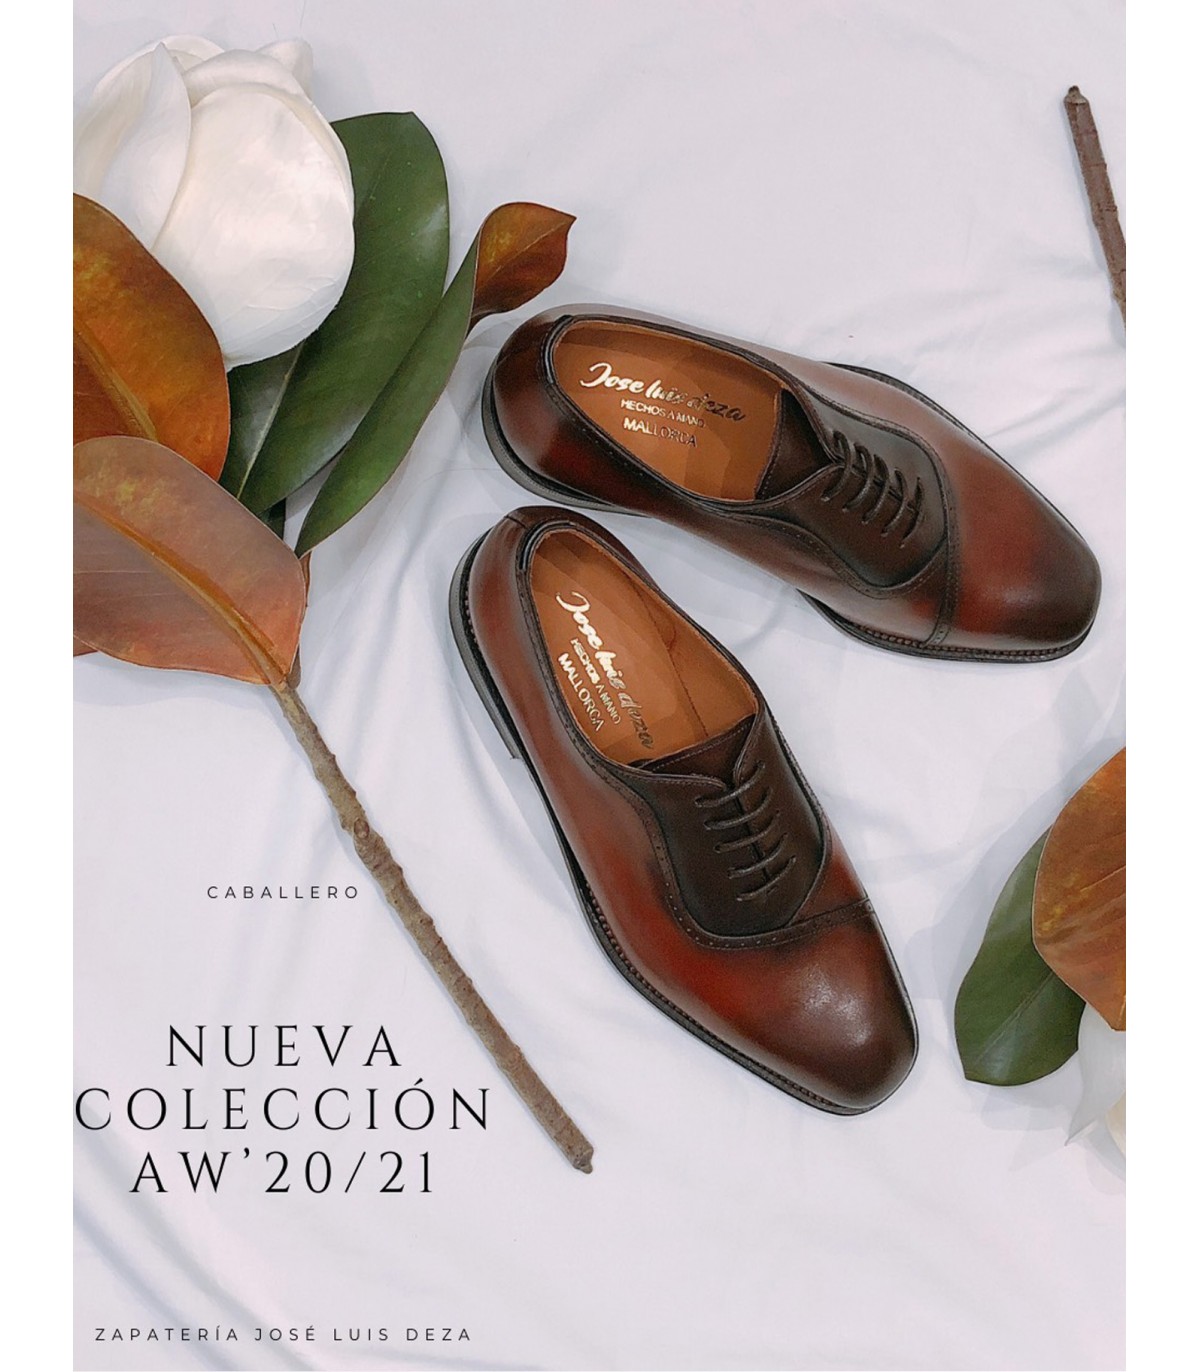 rural fragancia cáustico Zapatos Jose Luis Deza Hot Sale, 57% OFF | www.bridgepartnersllc.com